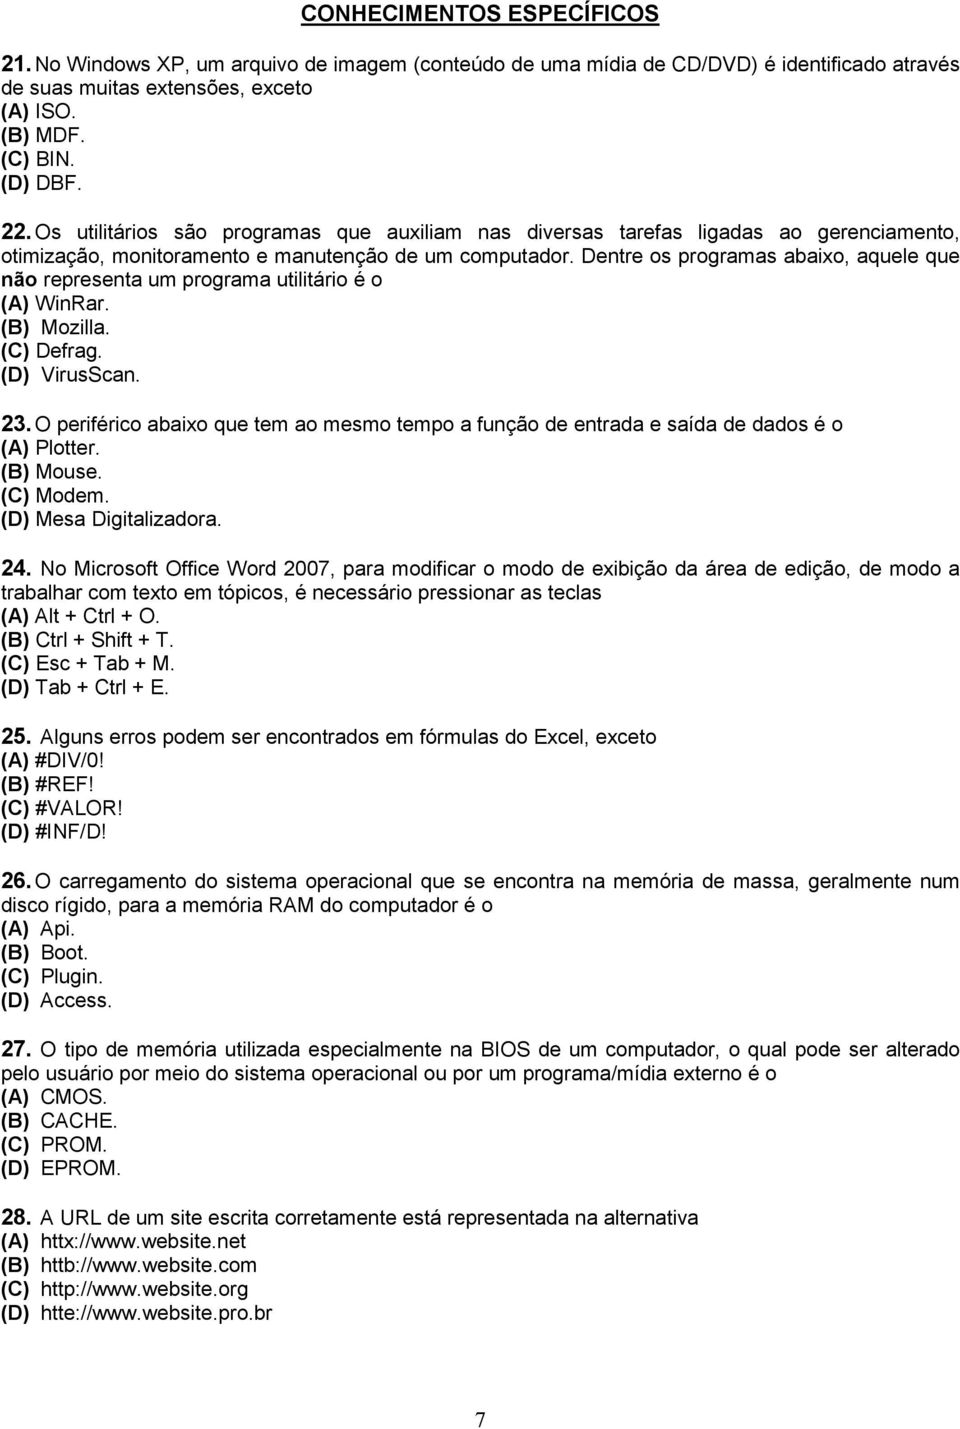 Dentre os programas abaixo, aquele que não representa um programa utilitário é o (A) WinRar. (B) Mozilla. (C) Defrag. (D) VirusScan. 23.